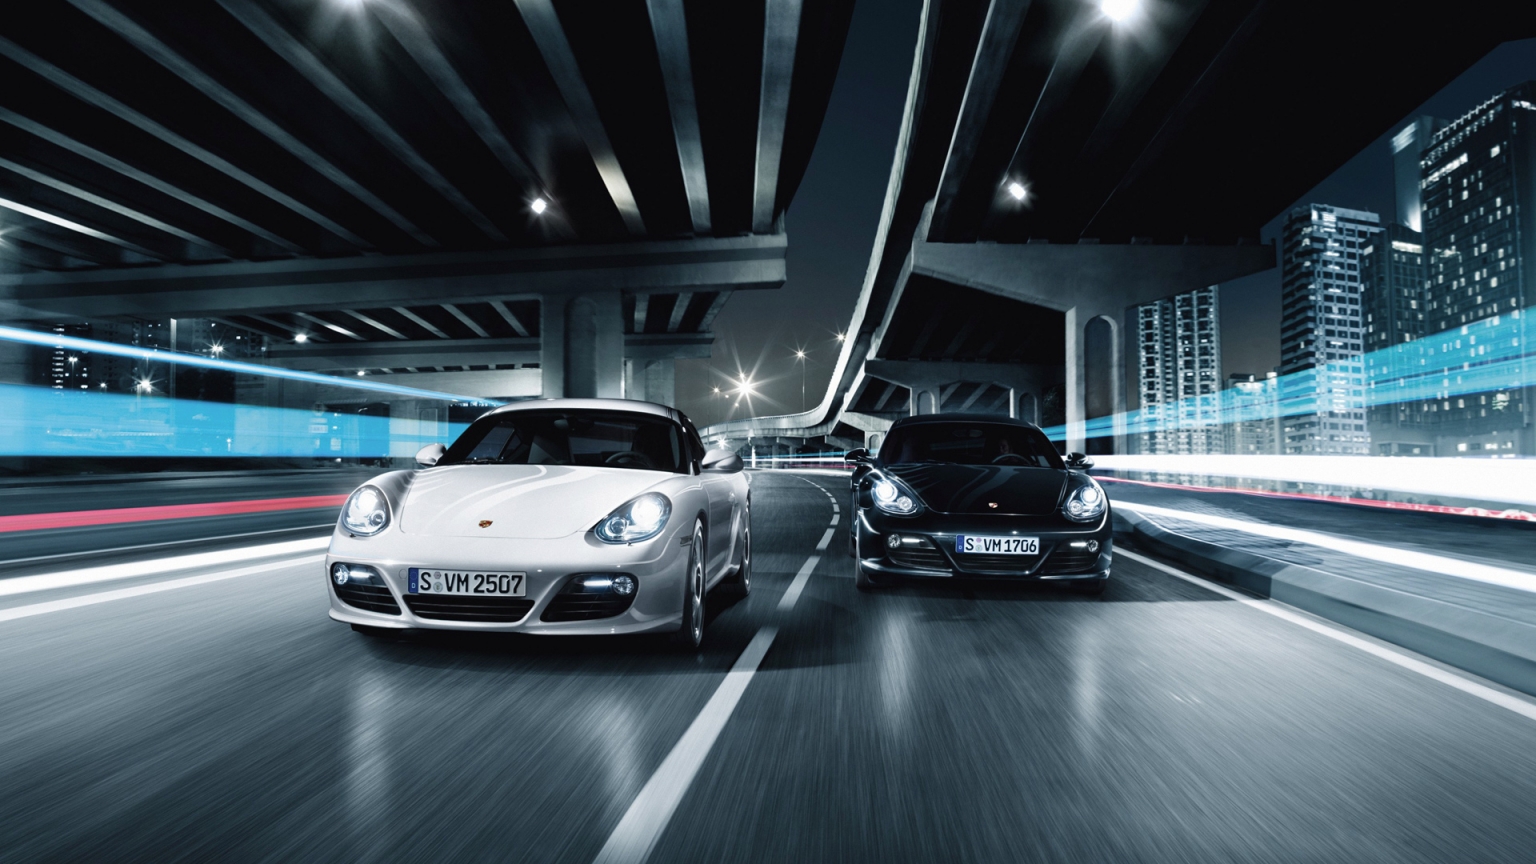 Porsche 911 GT2 Race for 1536 x 864 HDTV resolution